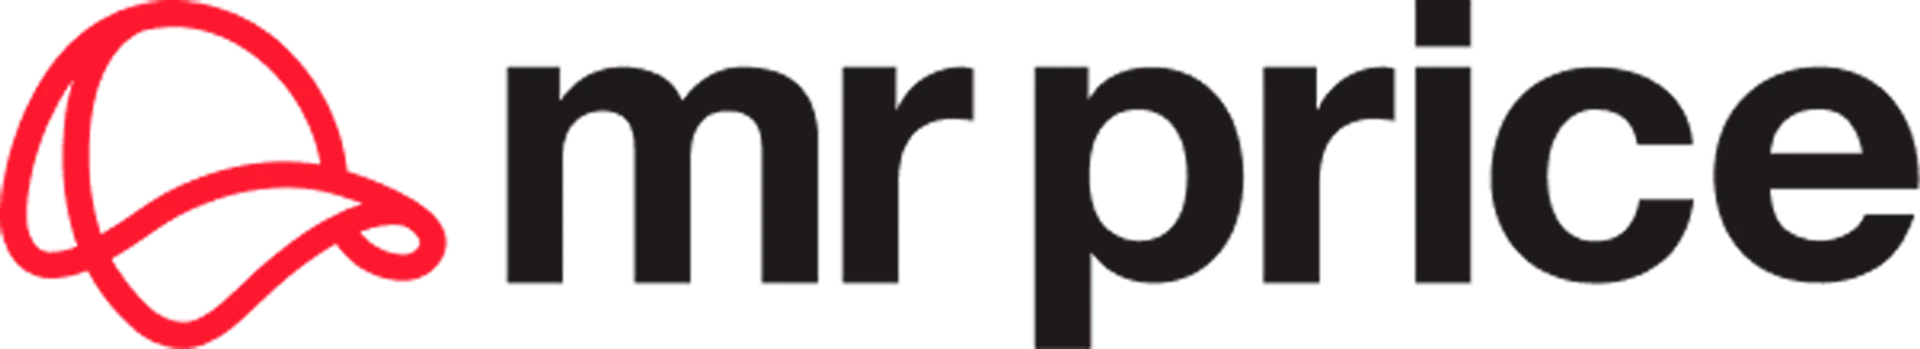 MR PRICE logo